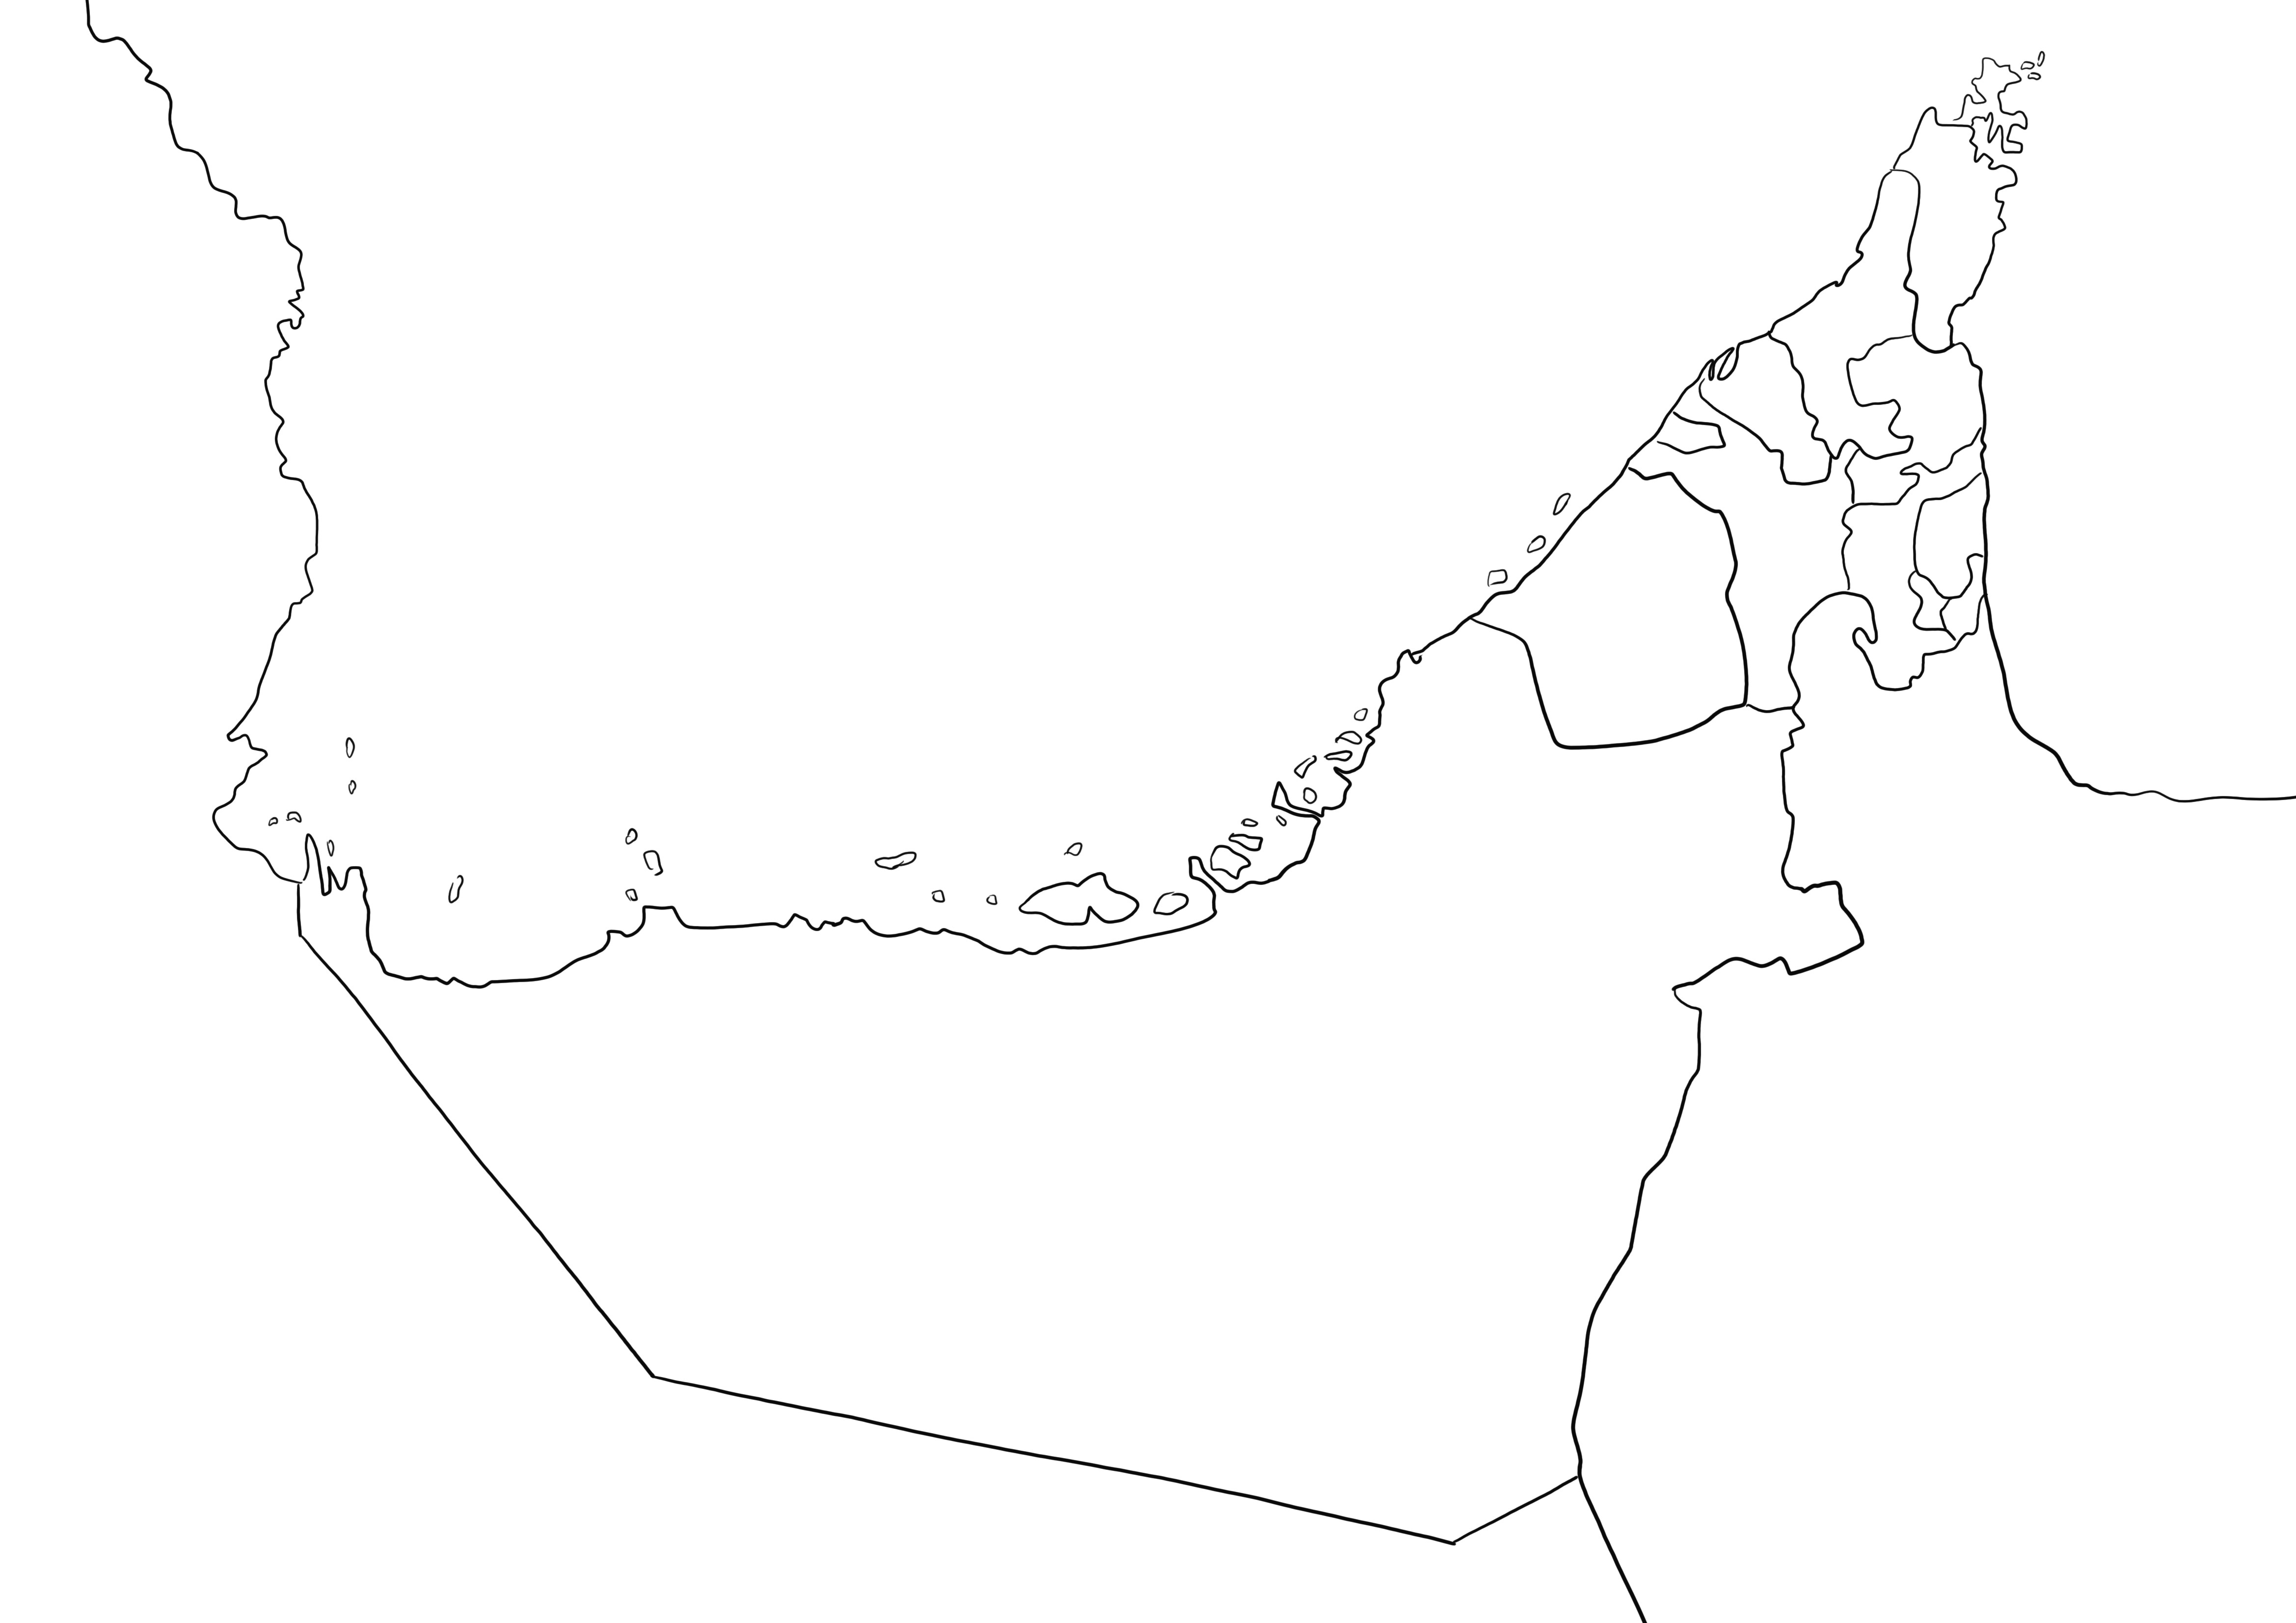 Birleşik Arap Emirlikleri Haritası düz sayfa ücretsiz yazdırılabilir siyah beyaz ve çocuklar tarafından renklendirilmesi kolaydır